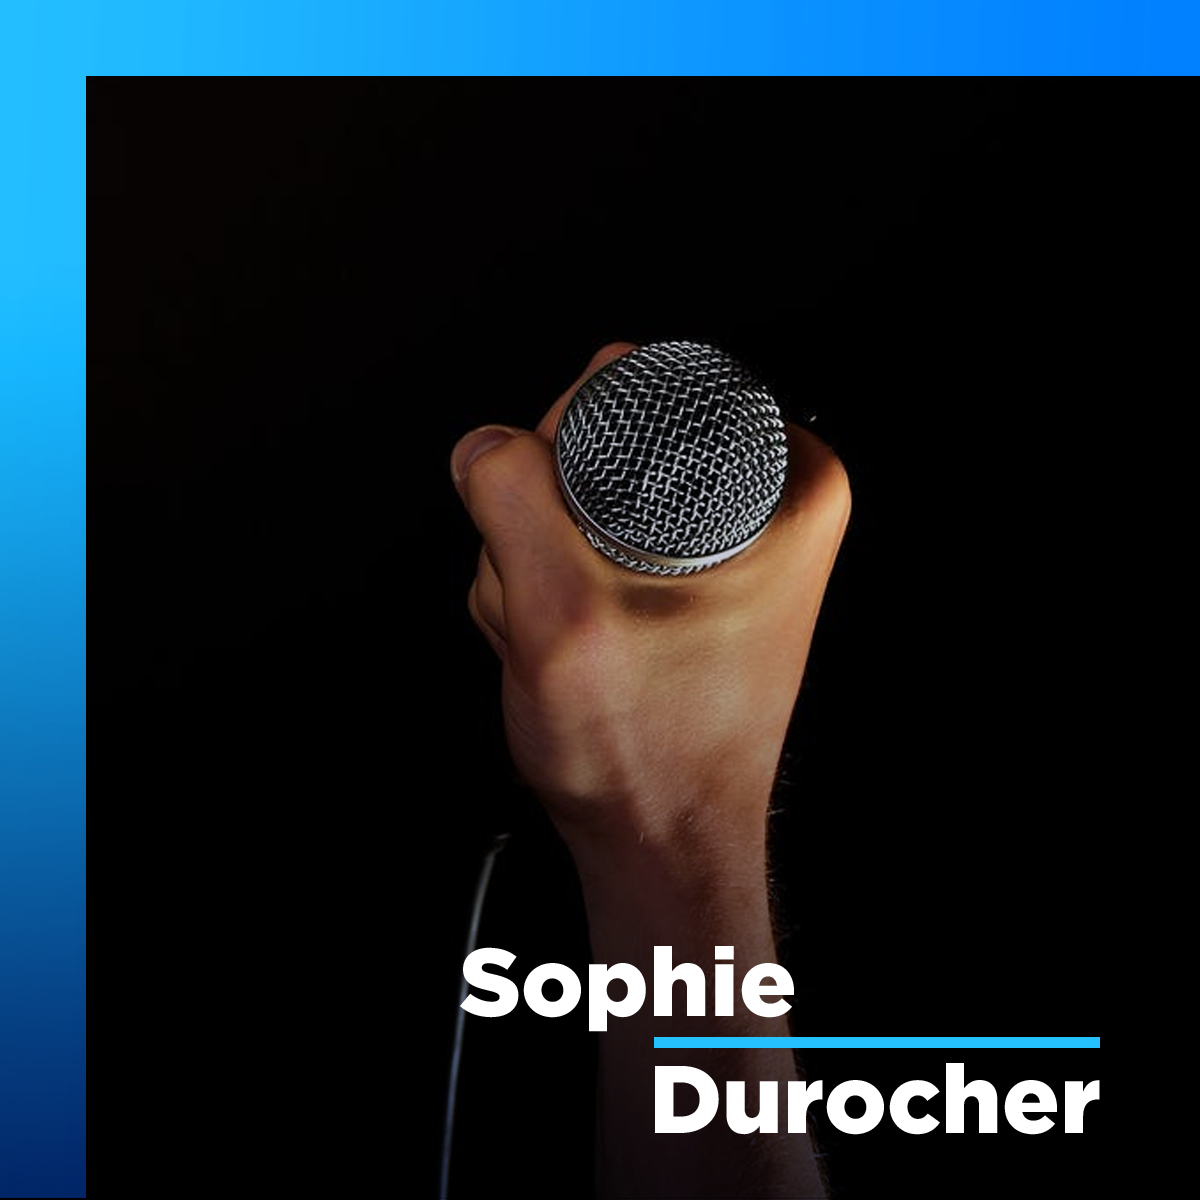 Les comédiens québécois devraient «prendre des cours de diction», dit Sophie Durocher